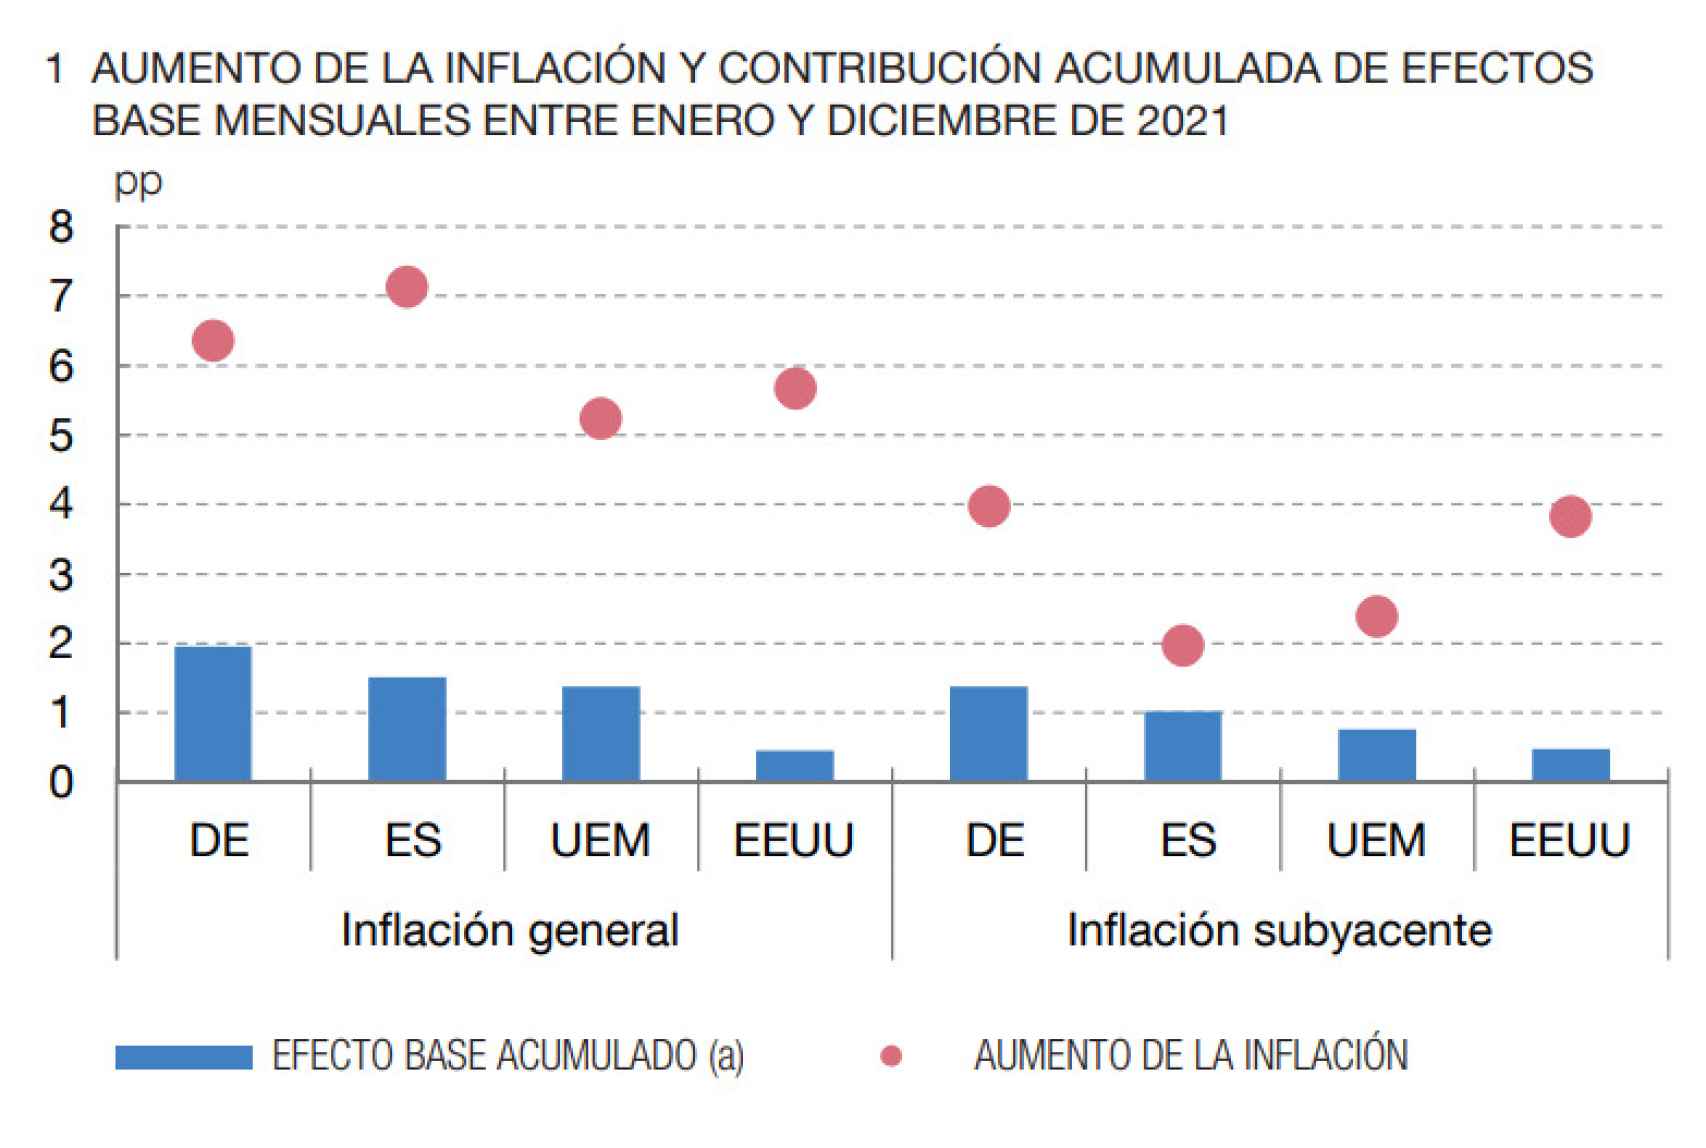 Fuente: Informe Anual 2021 del Banco de España.